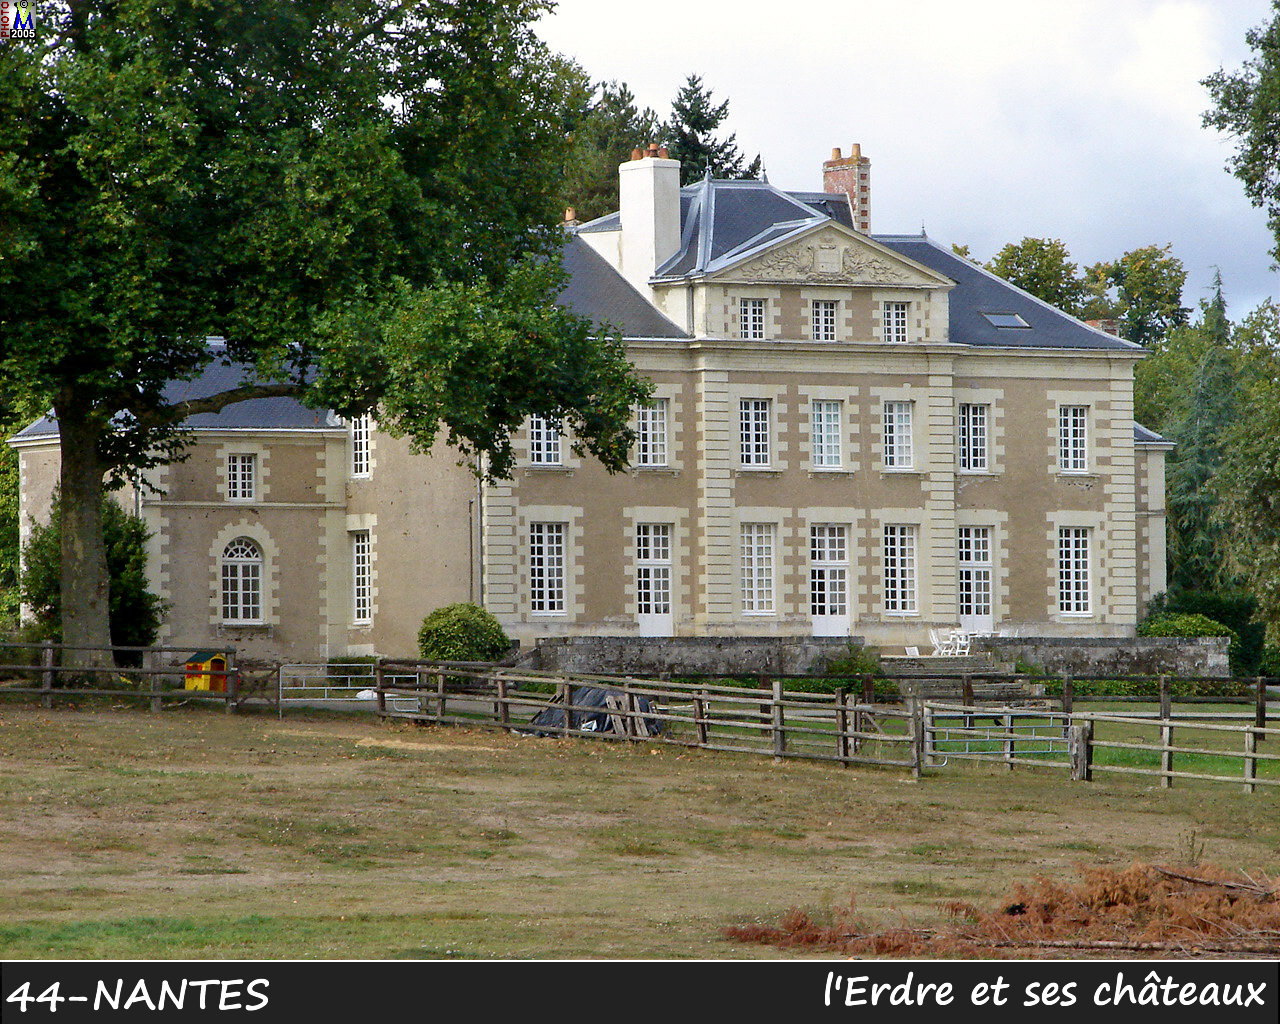 44NANTES_erdre-chateau_106.jpg